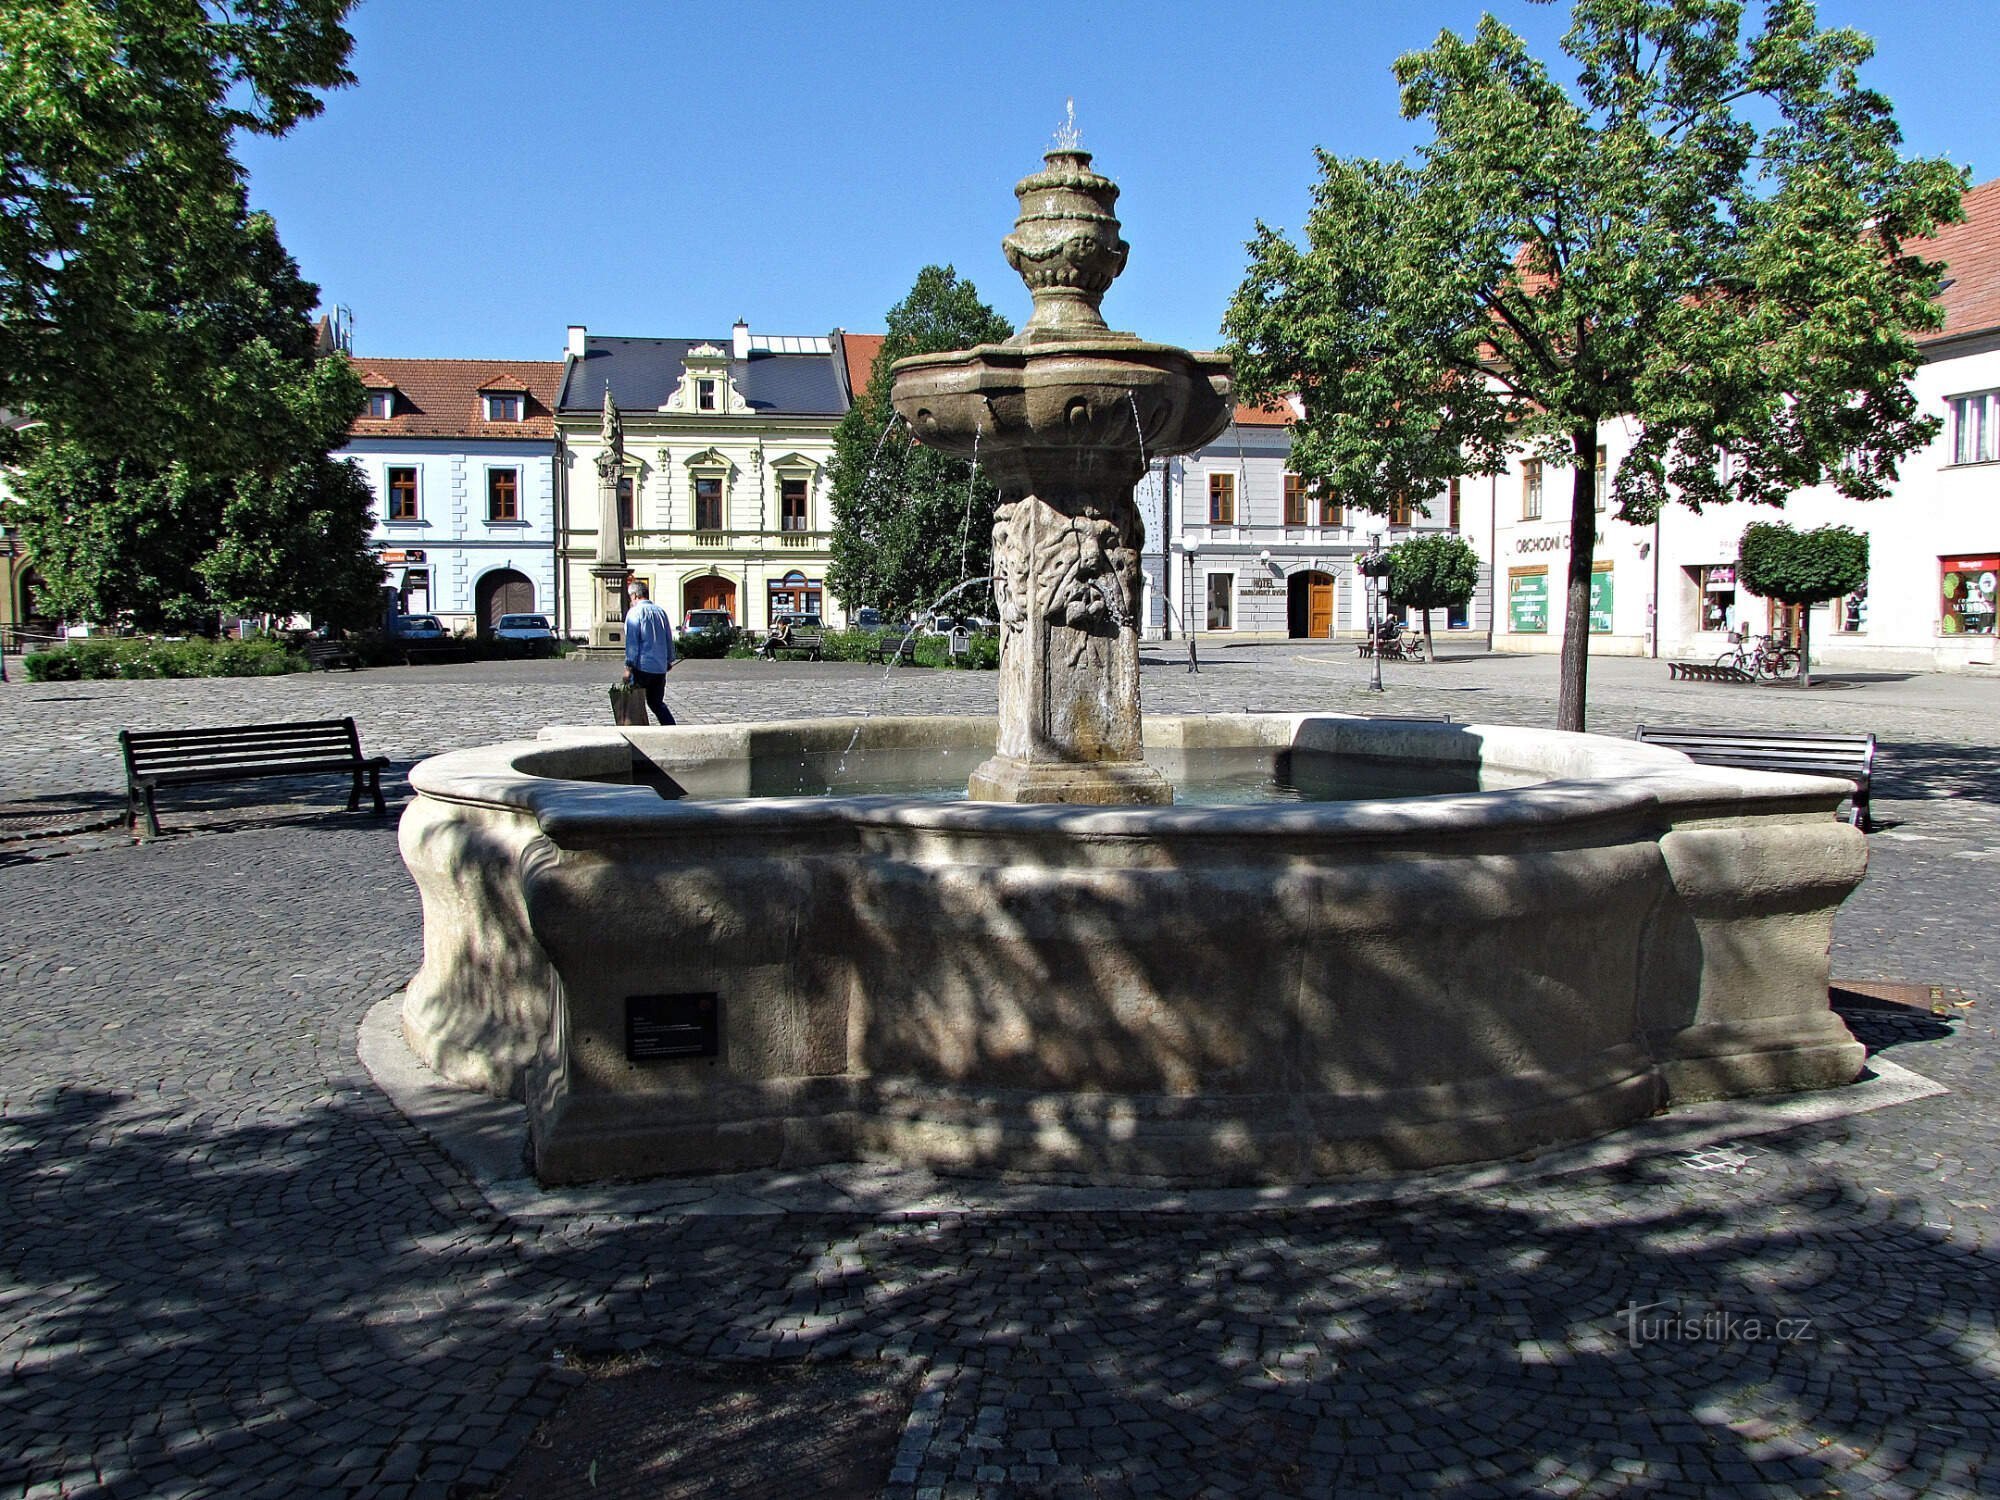 Uherské Hradiště - Mariánské náměstí 上的喷泉